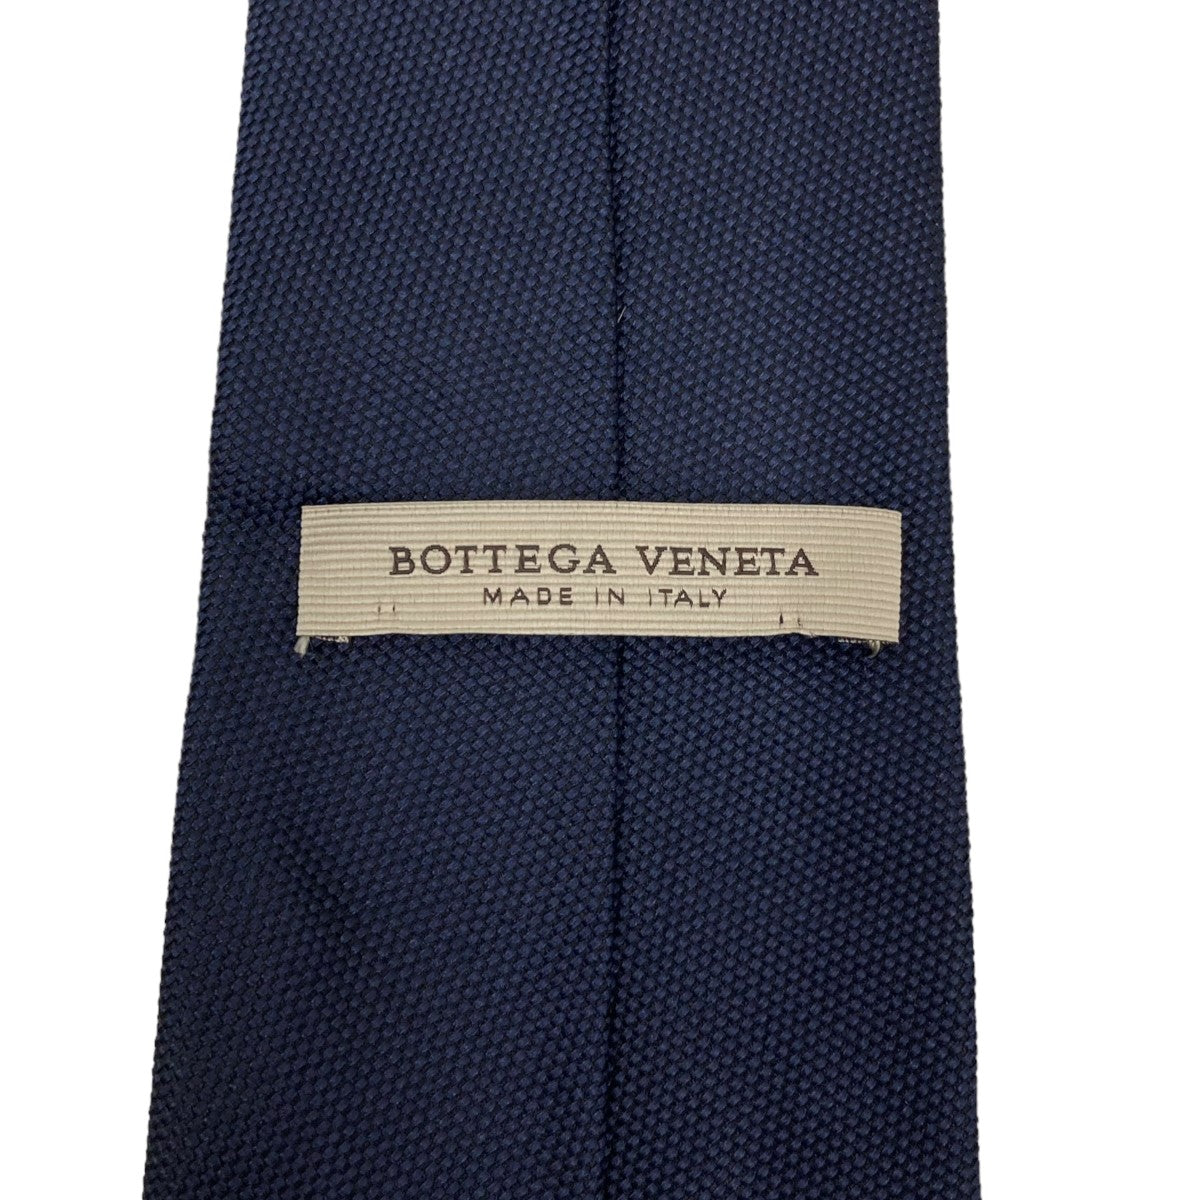 BOTTEGA VENETA(ボッテガヴェネタ) ネクタイ ネイビー サイズ 13 